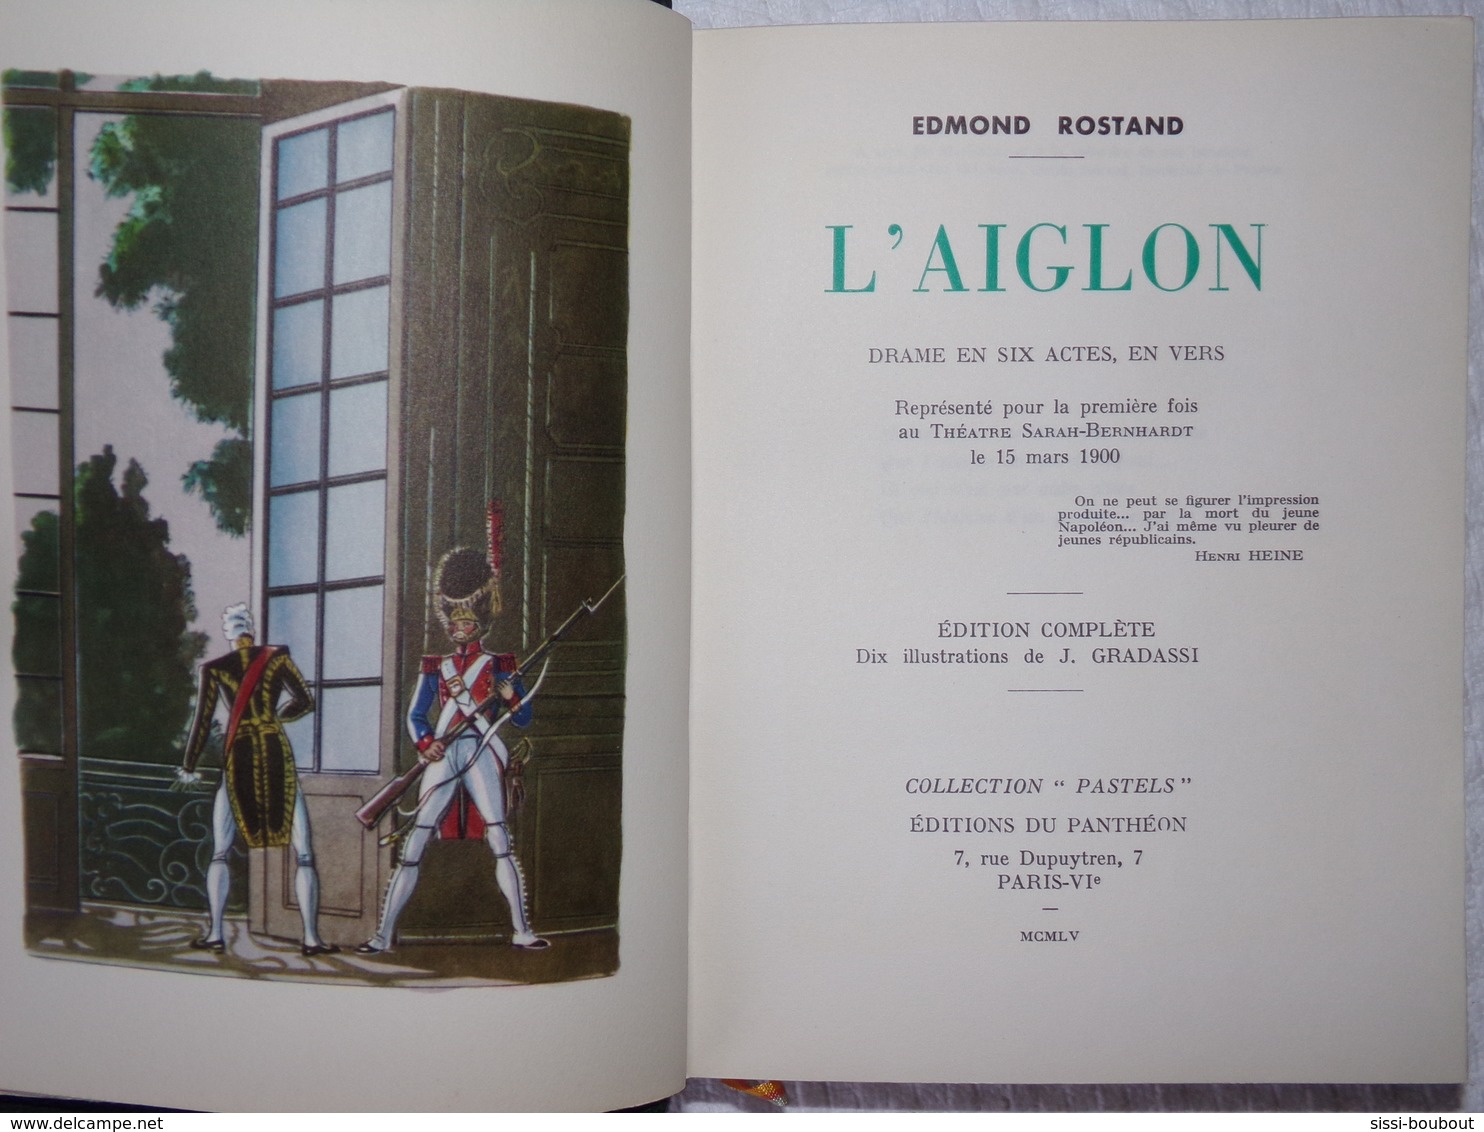 Très Beau Livre "L'AIGLON" De Edmond ROSTAND De 1955 - Illustrations J. GRADASSI - Classic Authors